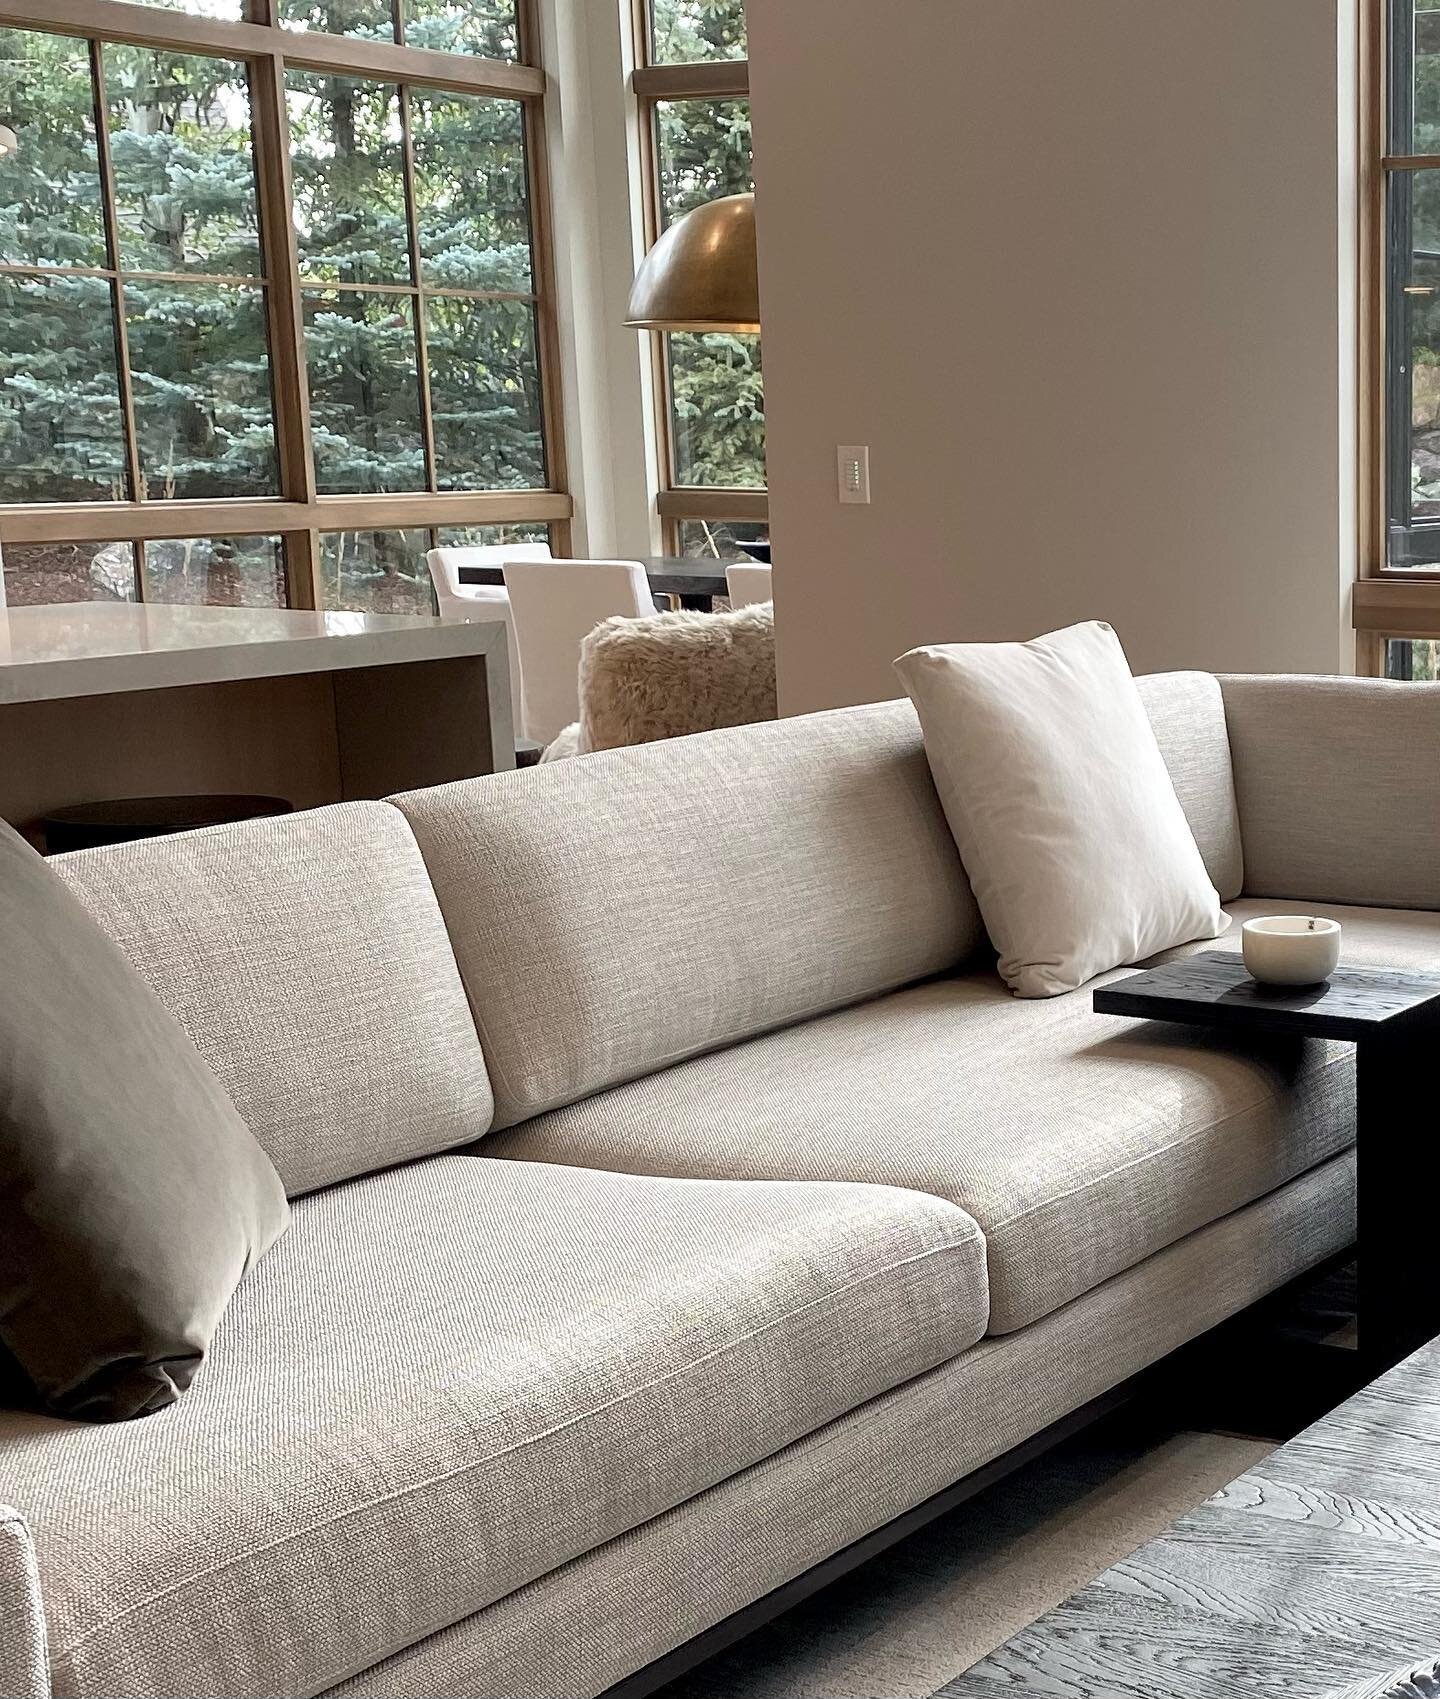 #violetferrittointeriors #sofa #custom #interiordesign #whites #sand #design